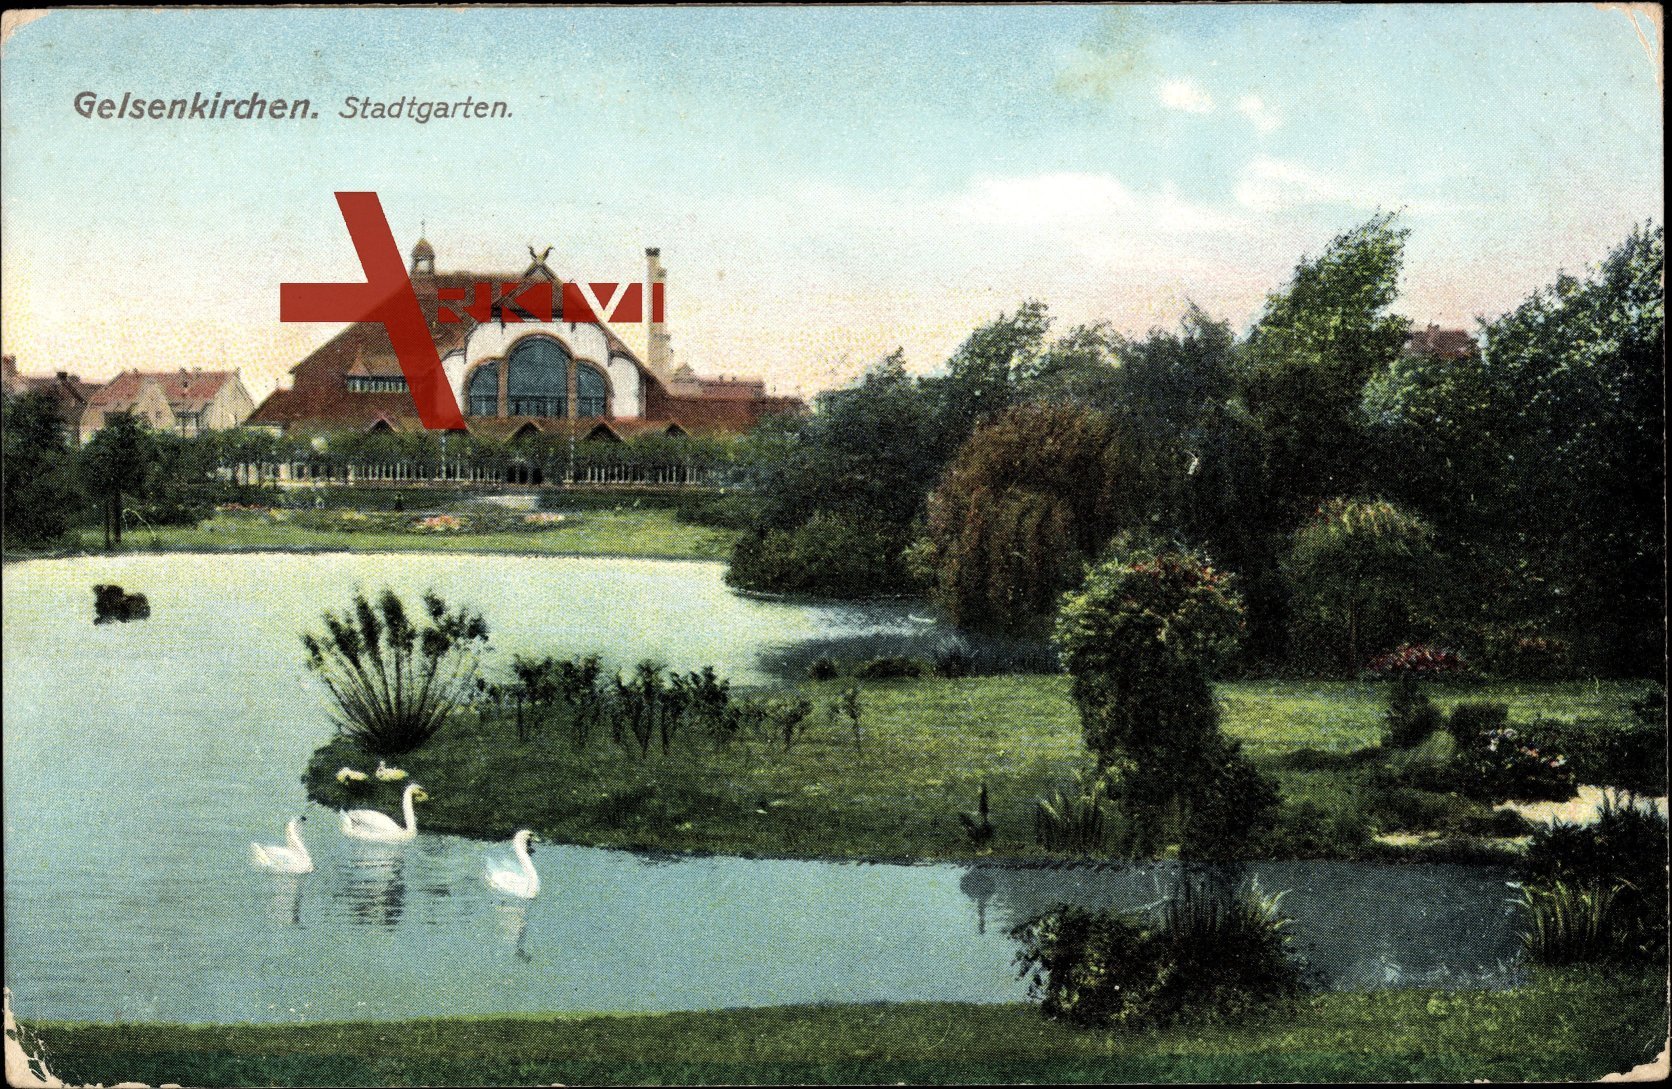 Gelsenkirchen im Ruhrgebiet, Partie im Stadtgarten, Schwäne